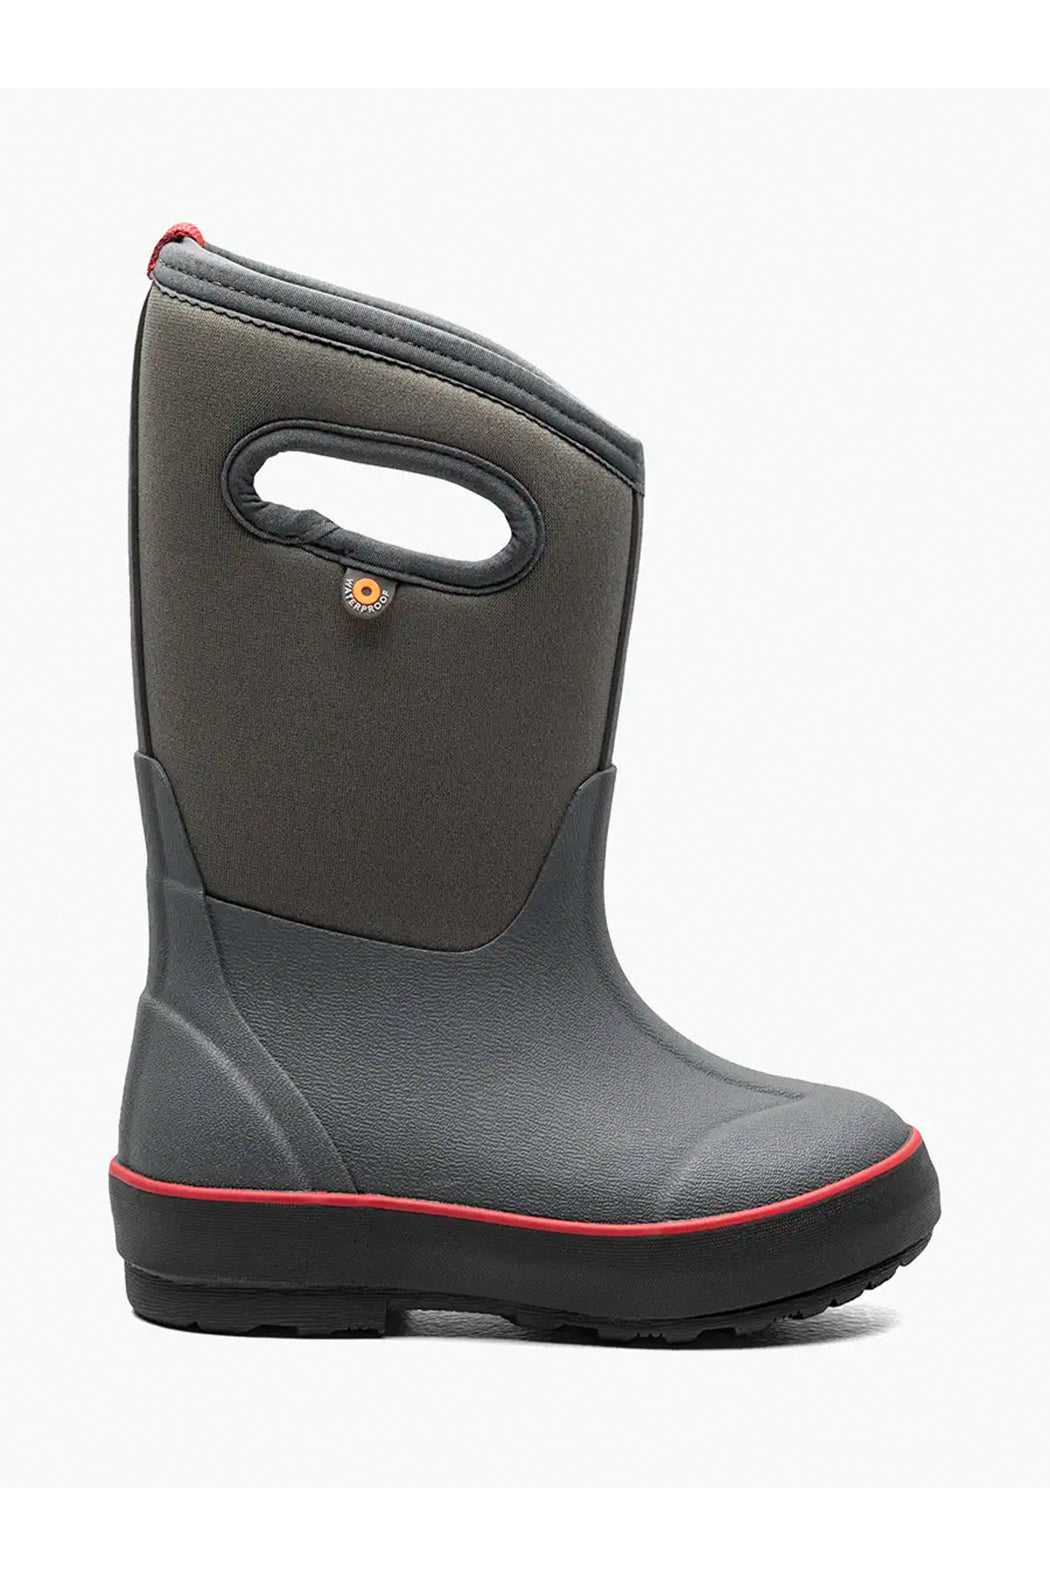 BOGS Neo Classic II Texture Waterproof Winter Boots - Solid